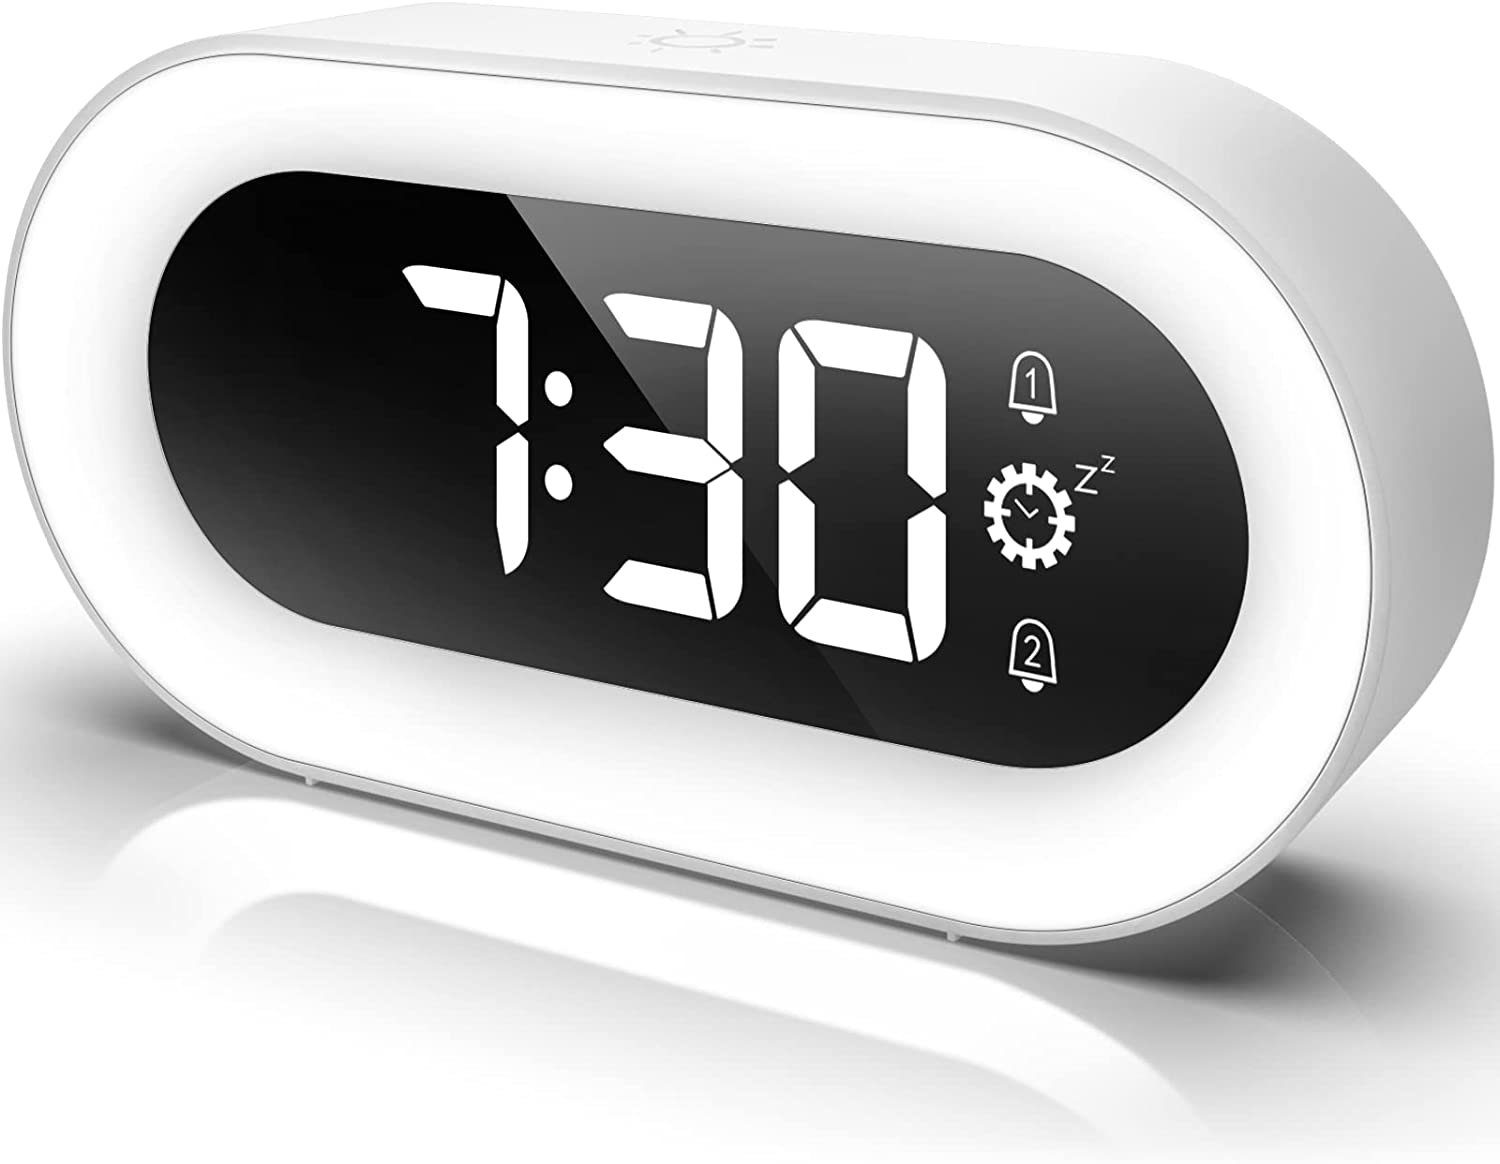 Wecker Bluetooth5.0 wecker LED USB Digital Tischuhr Alarm Uhr Lautsprecher NEU